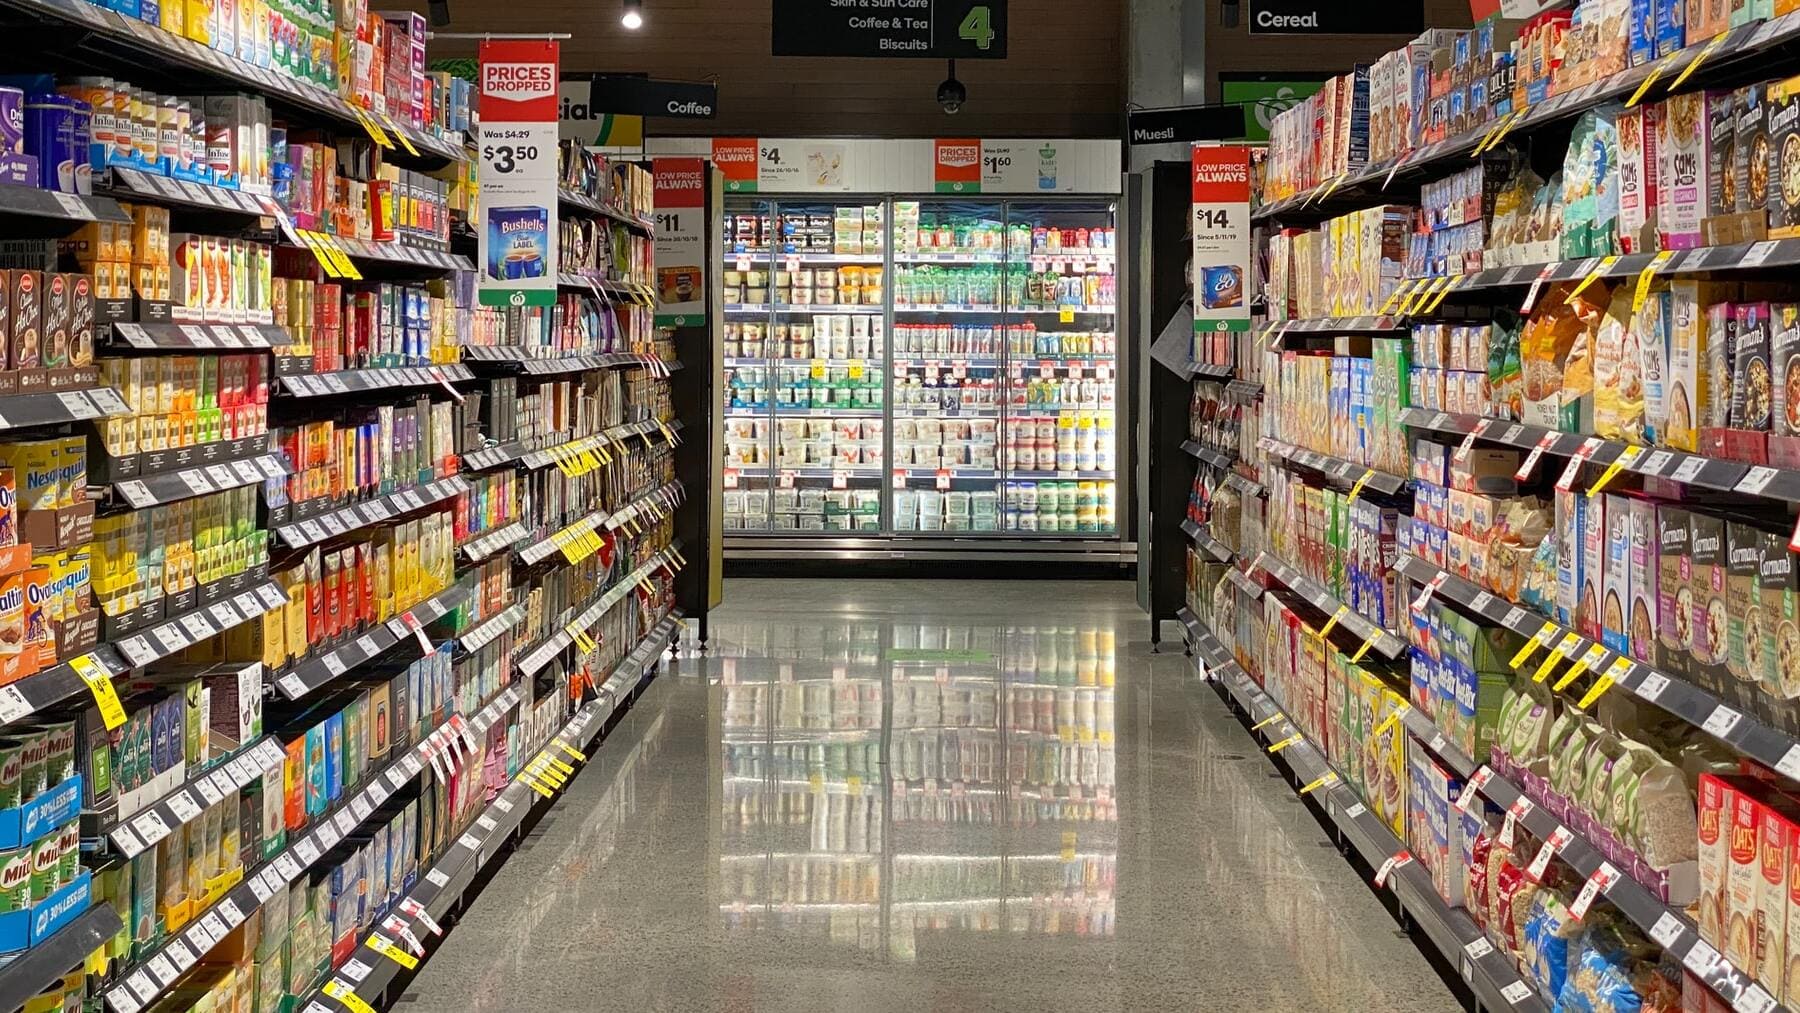  191 D 243 nde y cu 225 ndo se abri 243 el primer supermercado del mundo 